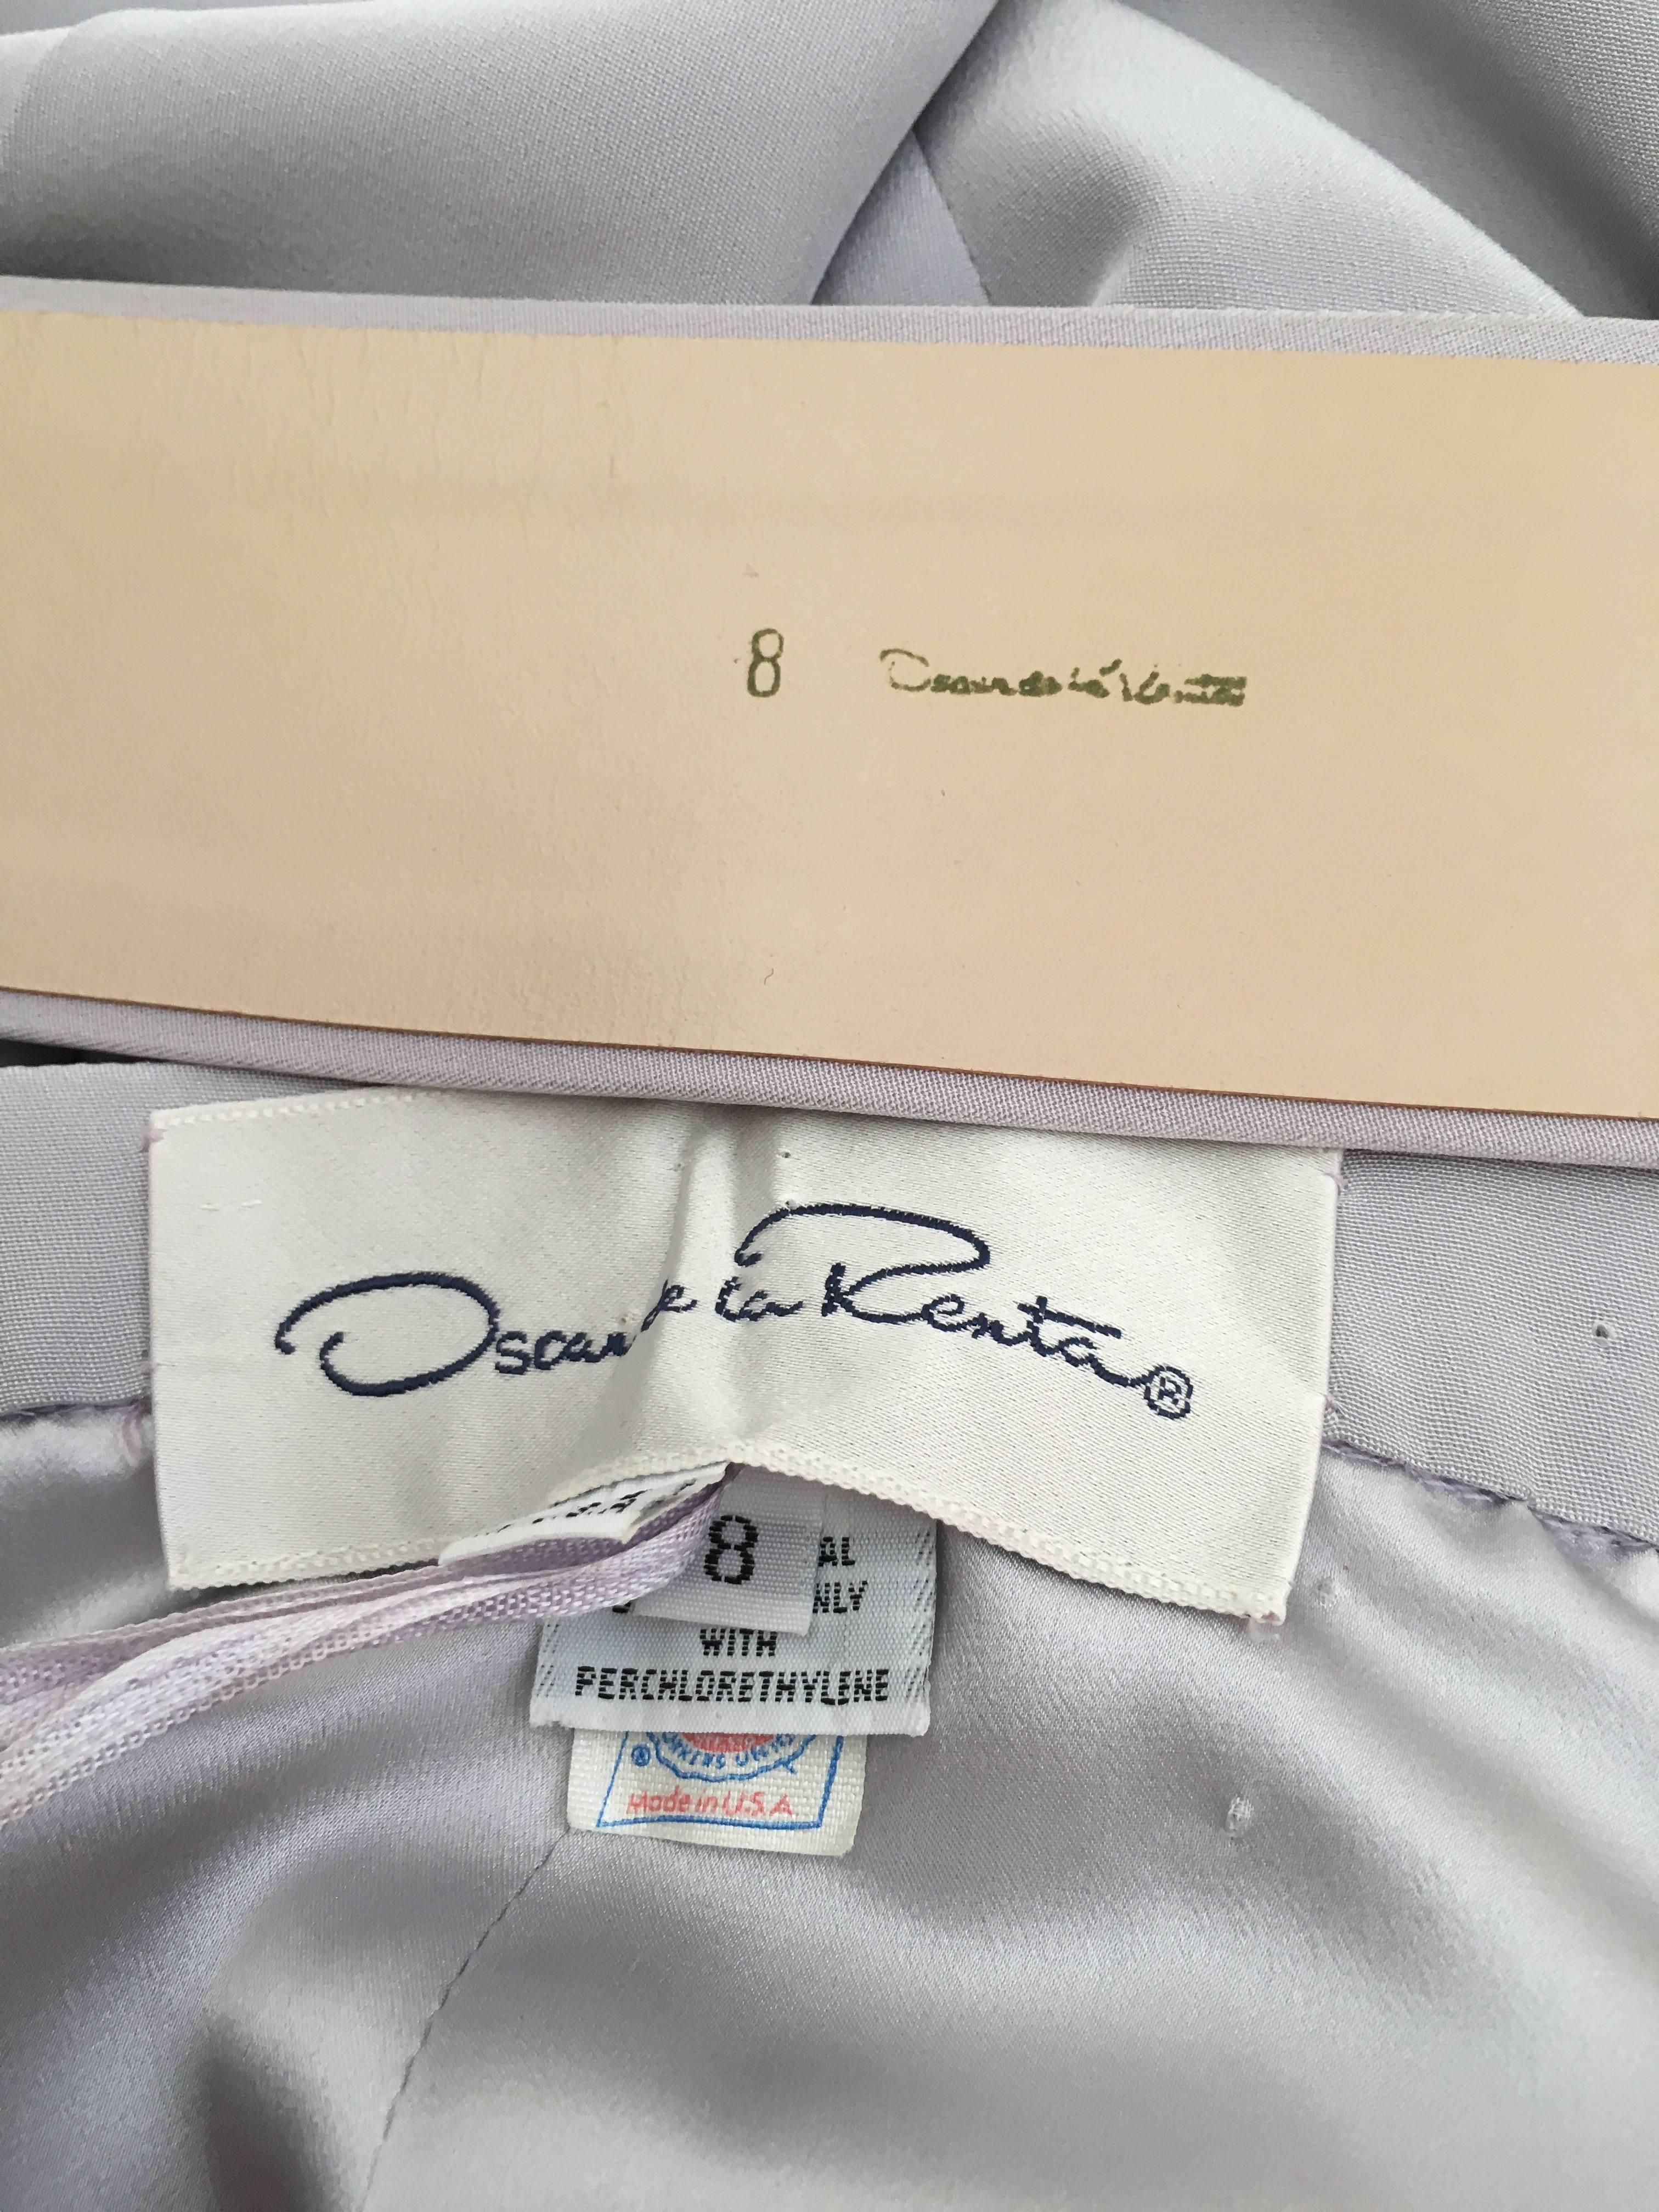 Oscar de la Renta Silver Grey Silk Pleated Pants with Pockets & Belt Size 6. 5